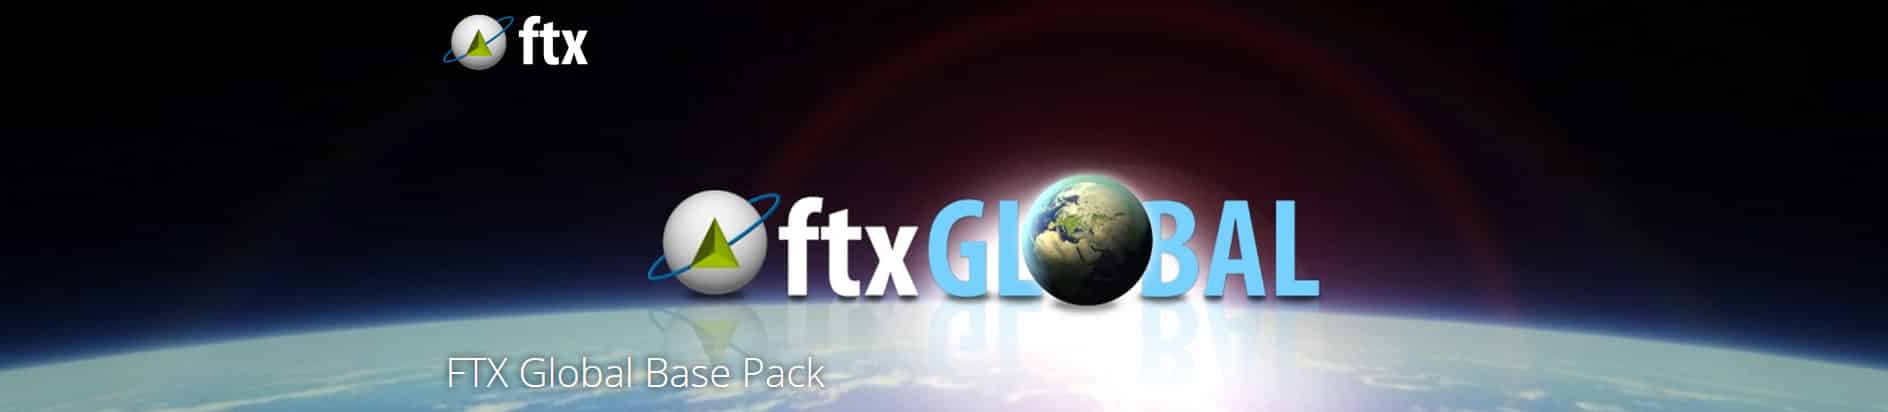 fsx orbx global